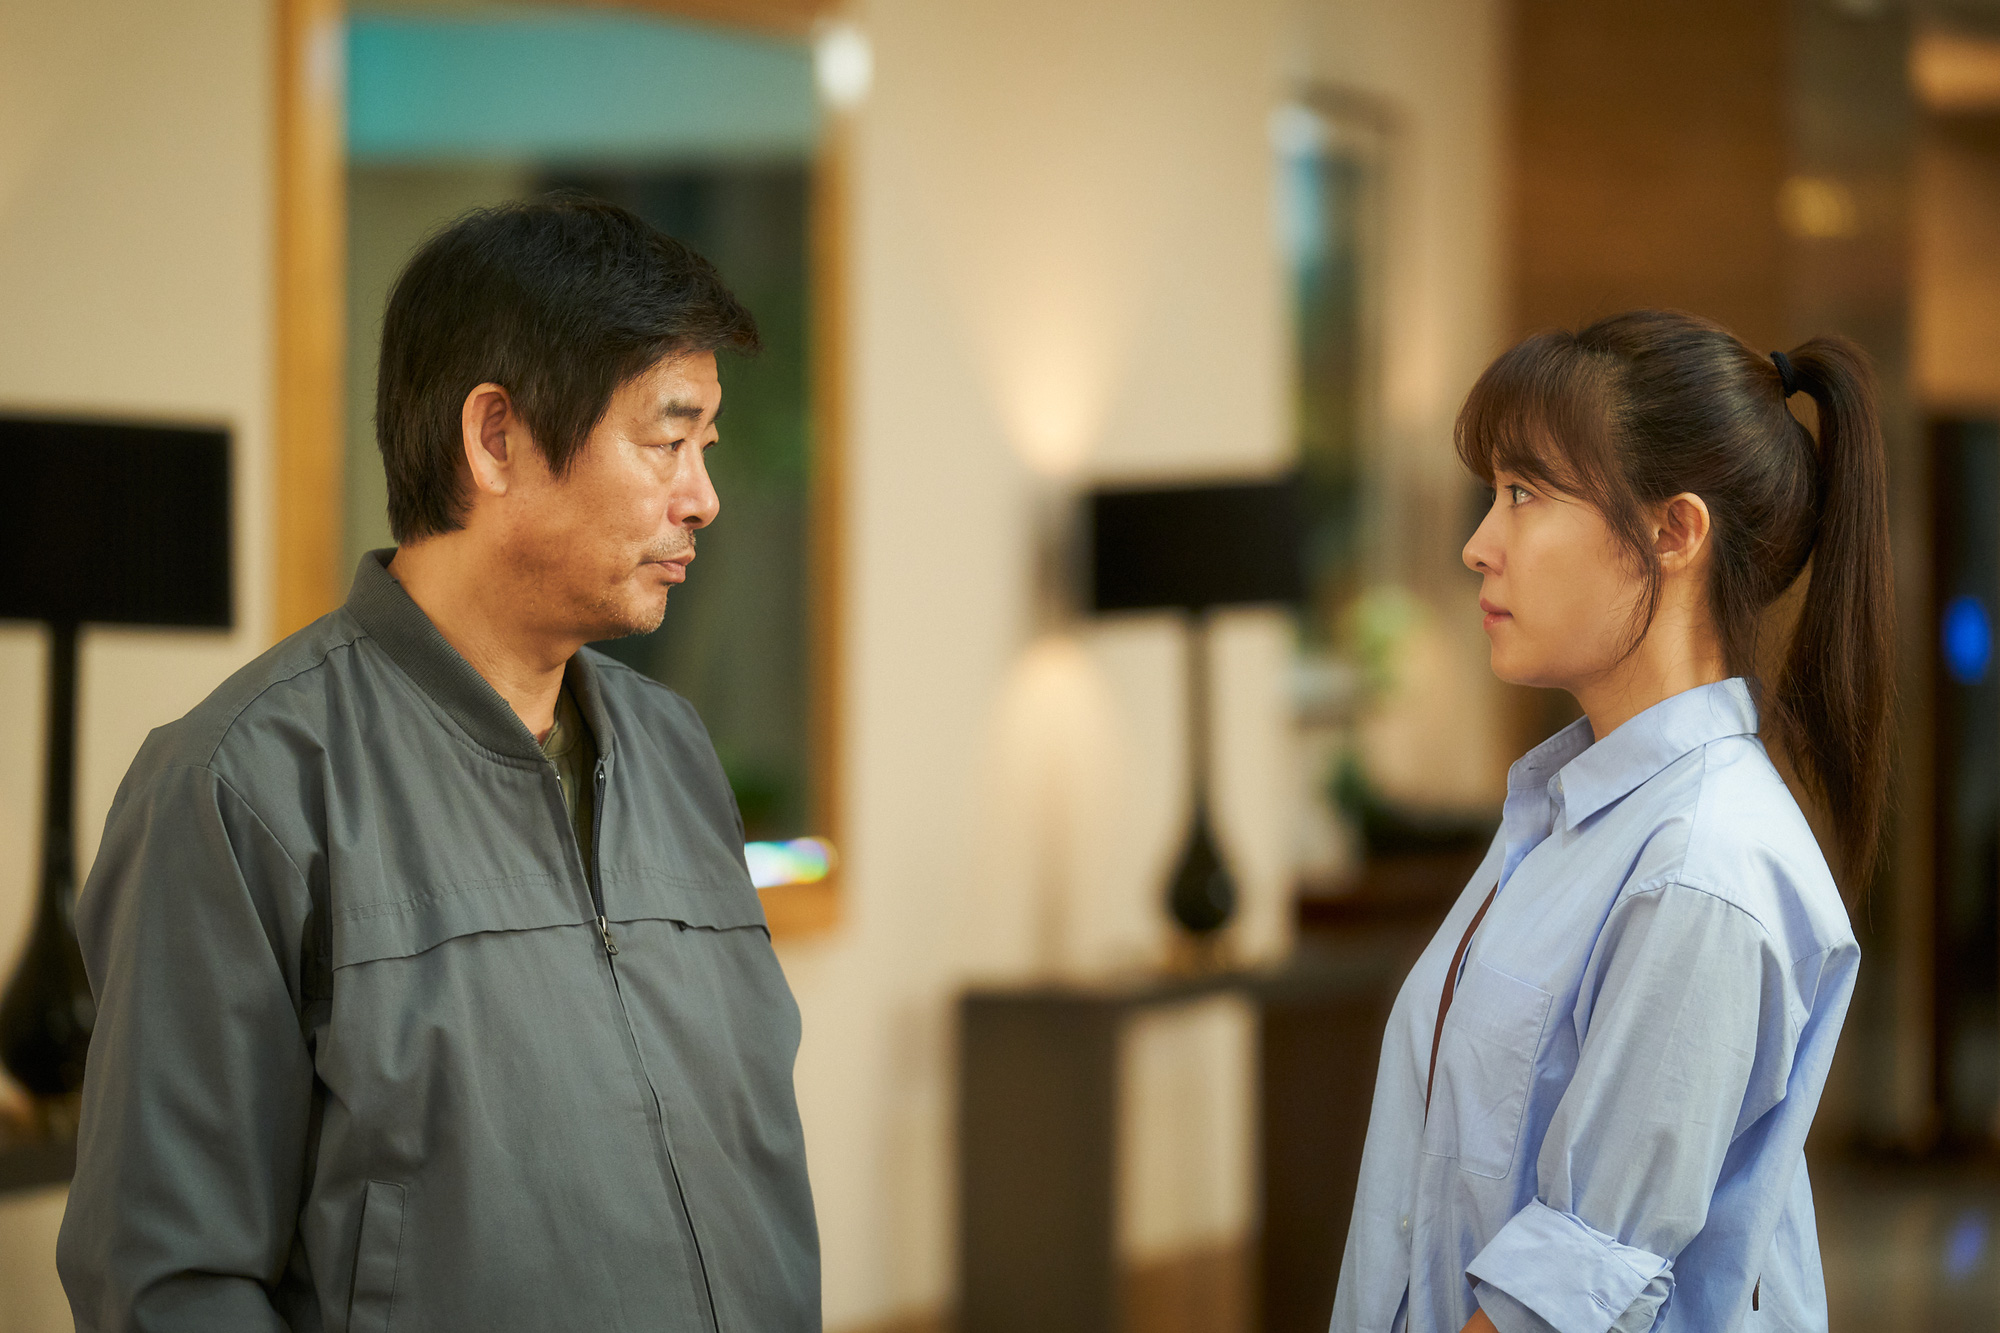 Cục Nợ Hóa Cục Cưng: Phim gia đình “hút nước mắt”, Ha Ji Won khóc lụt cả màn hình, càng xem càng thấy nhớ Reply 1997? - Ảnh 4.